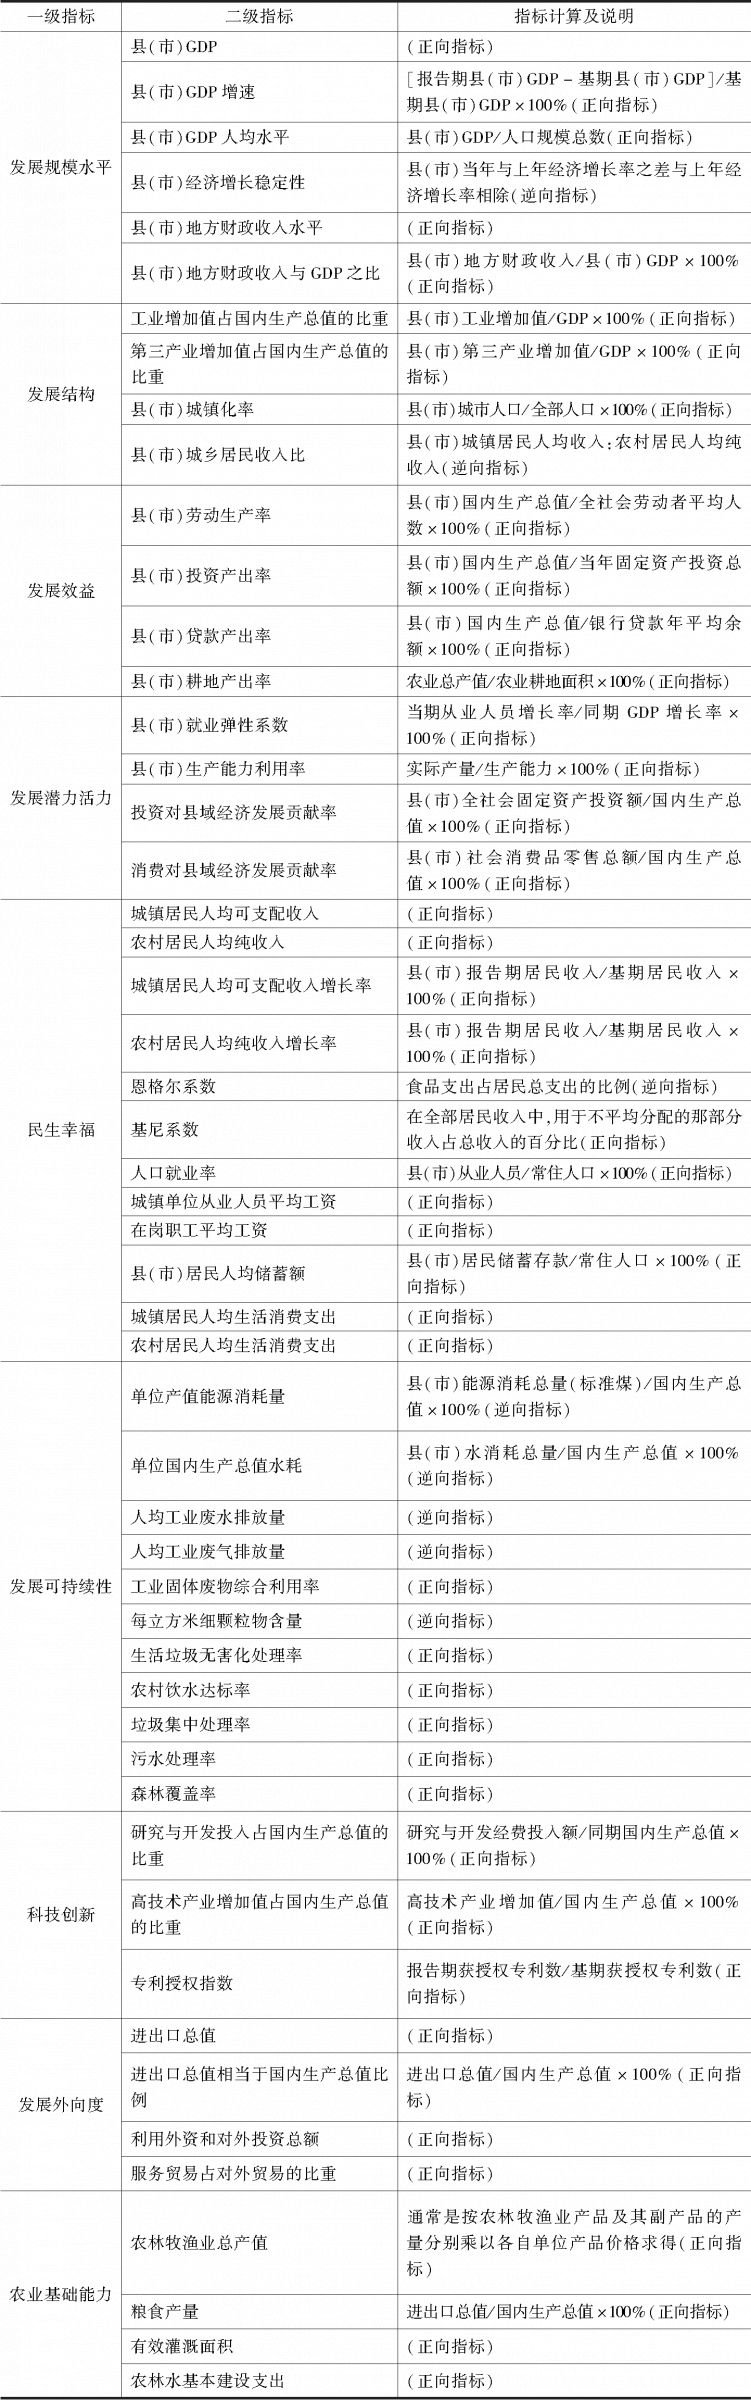 表1 河南省县域经济发展质量评价指标体系